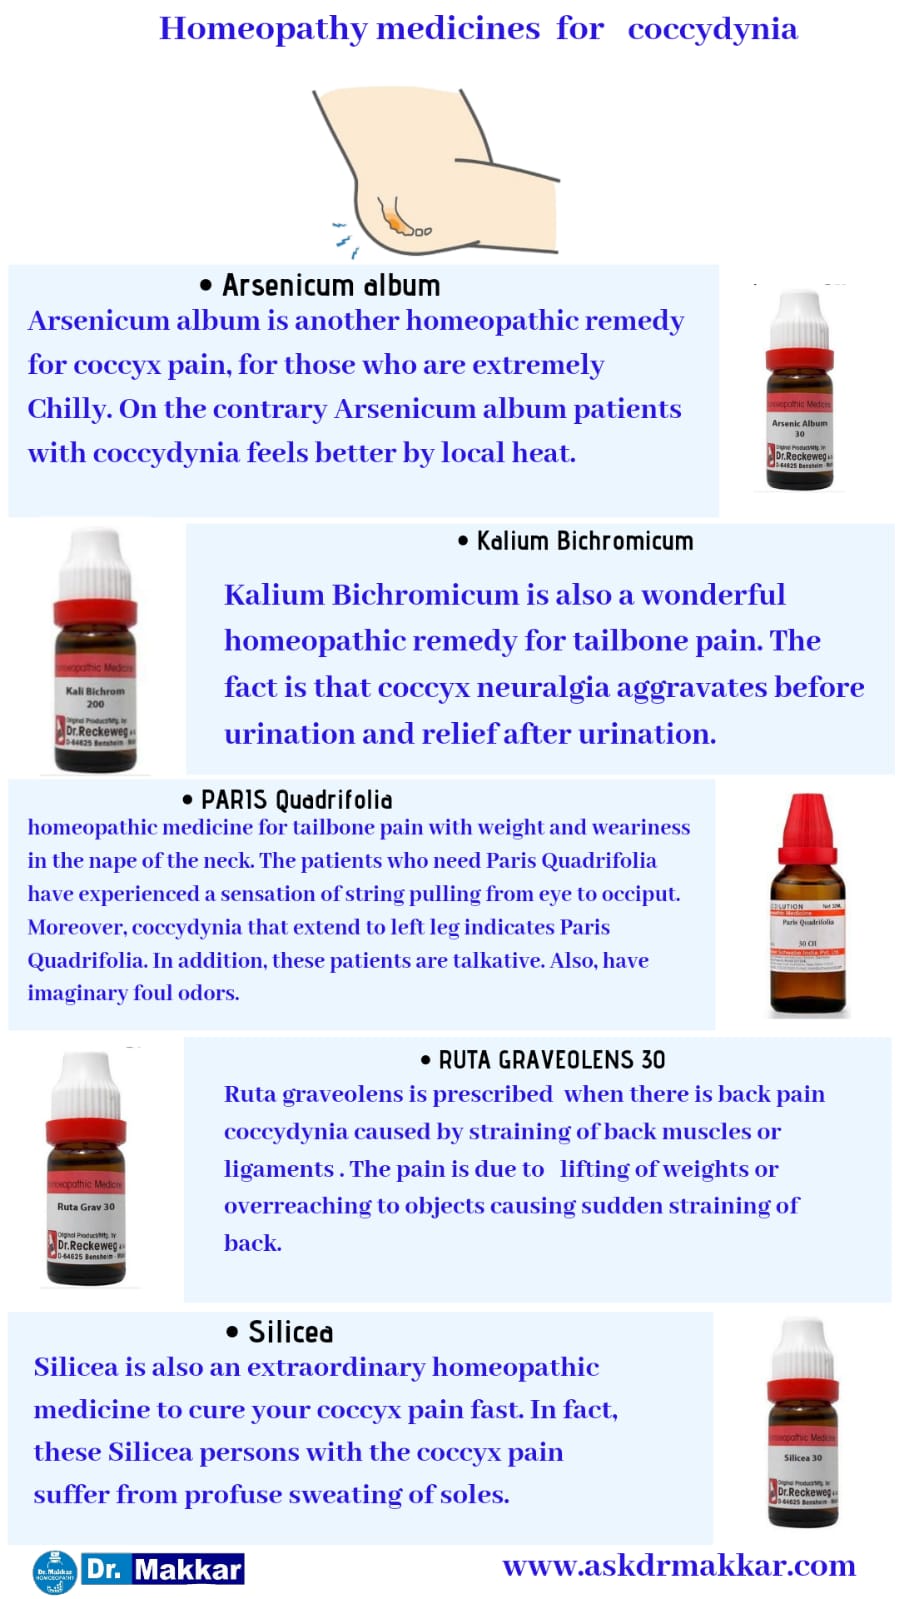 Best Homeopathic Medicines for top Remedies for Coccydynia due to Tailbone || कोक्सीडीनिया टेलबोन दर्द की होम्योपैथिक ट्रीटमेंट दवा सर्वश्रेष्ठ होम्योपैथिक दवा शीर्ष उपाय